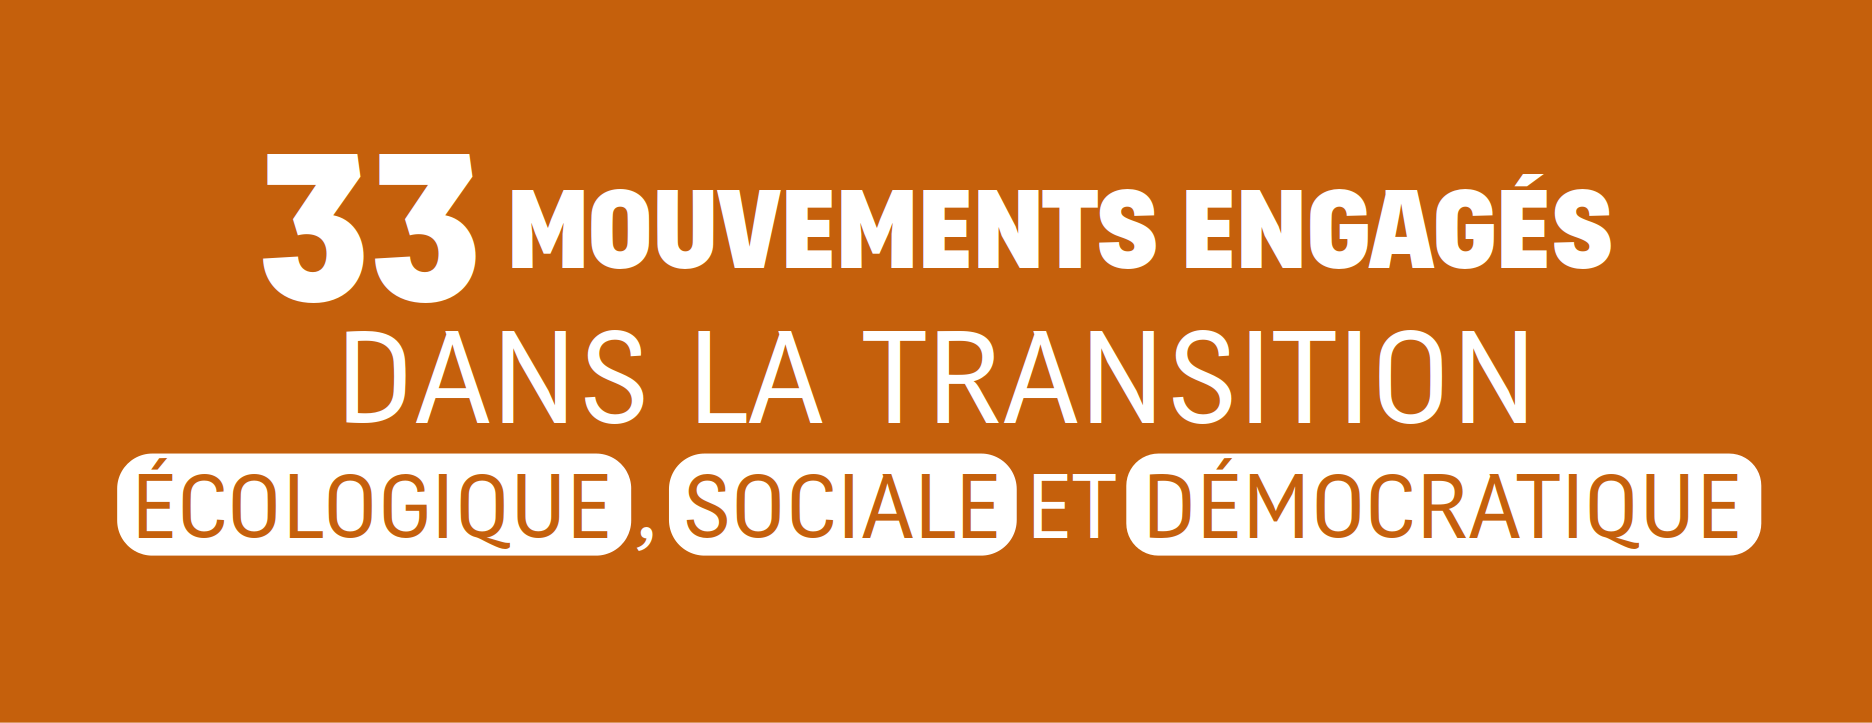 33 mouvements engagés dans la transition écologique, sociale et démocratique